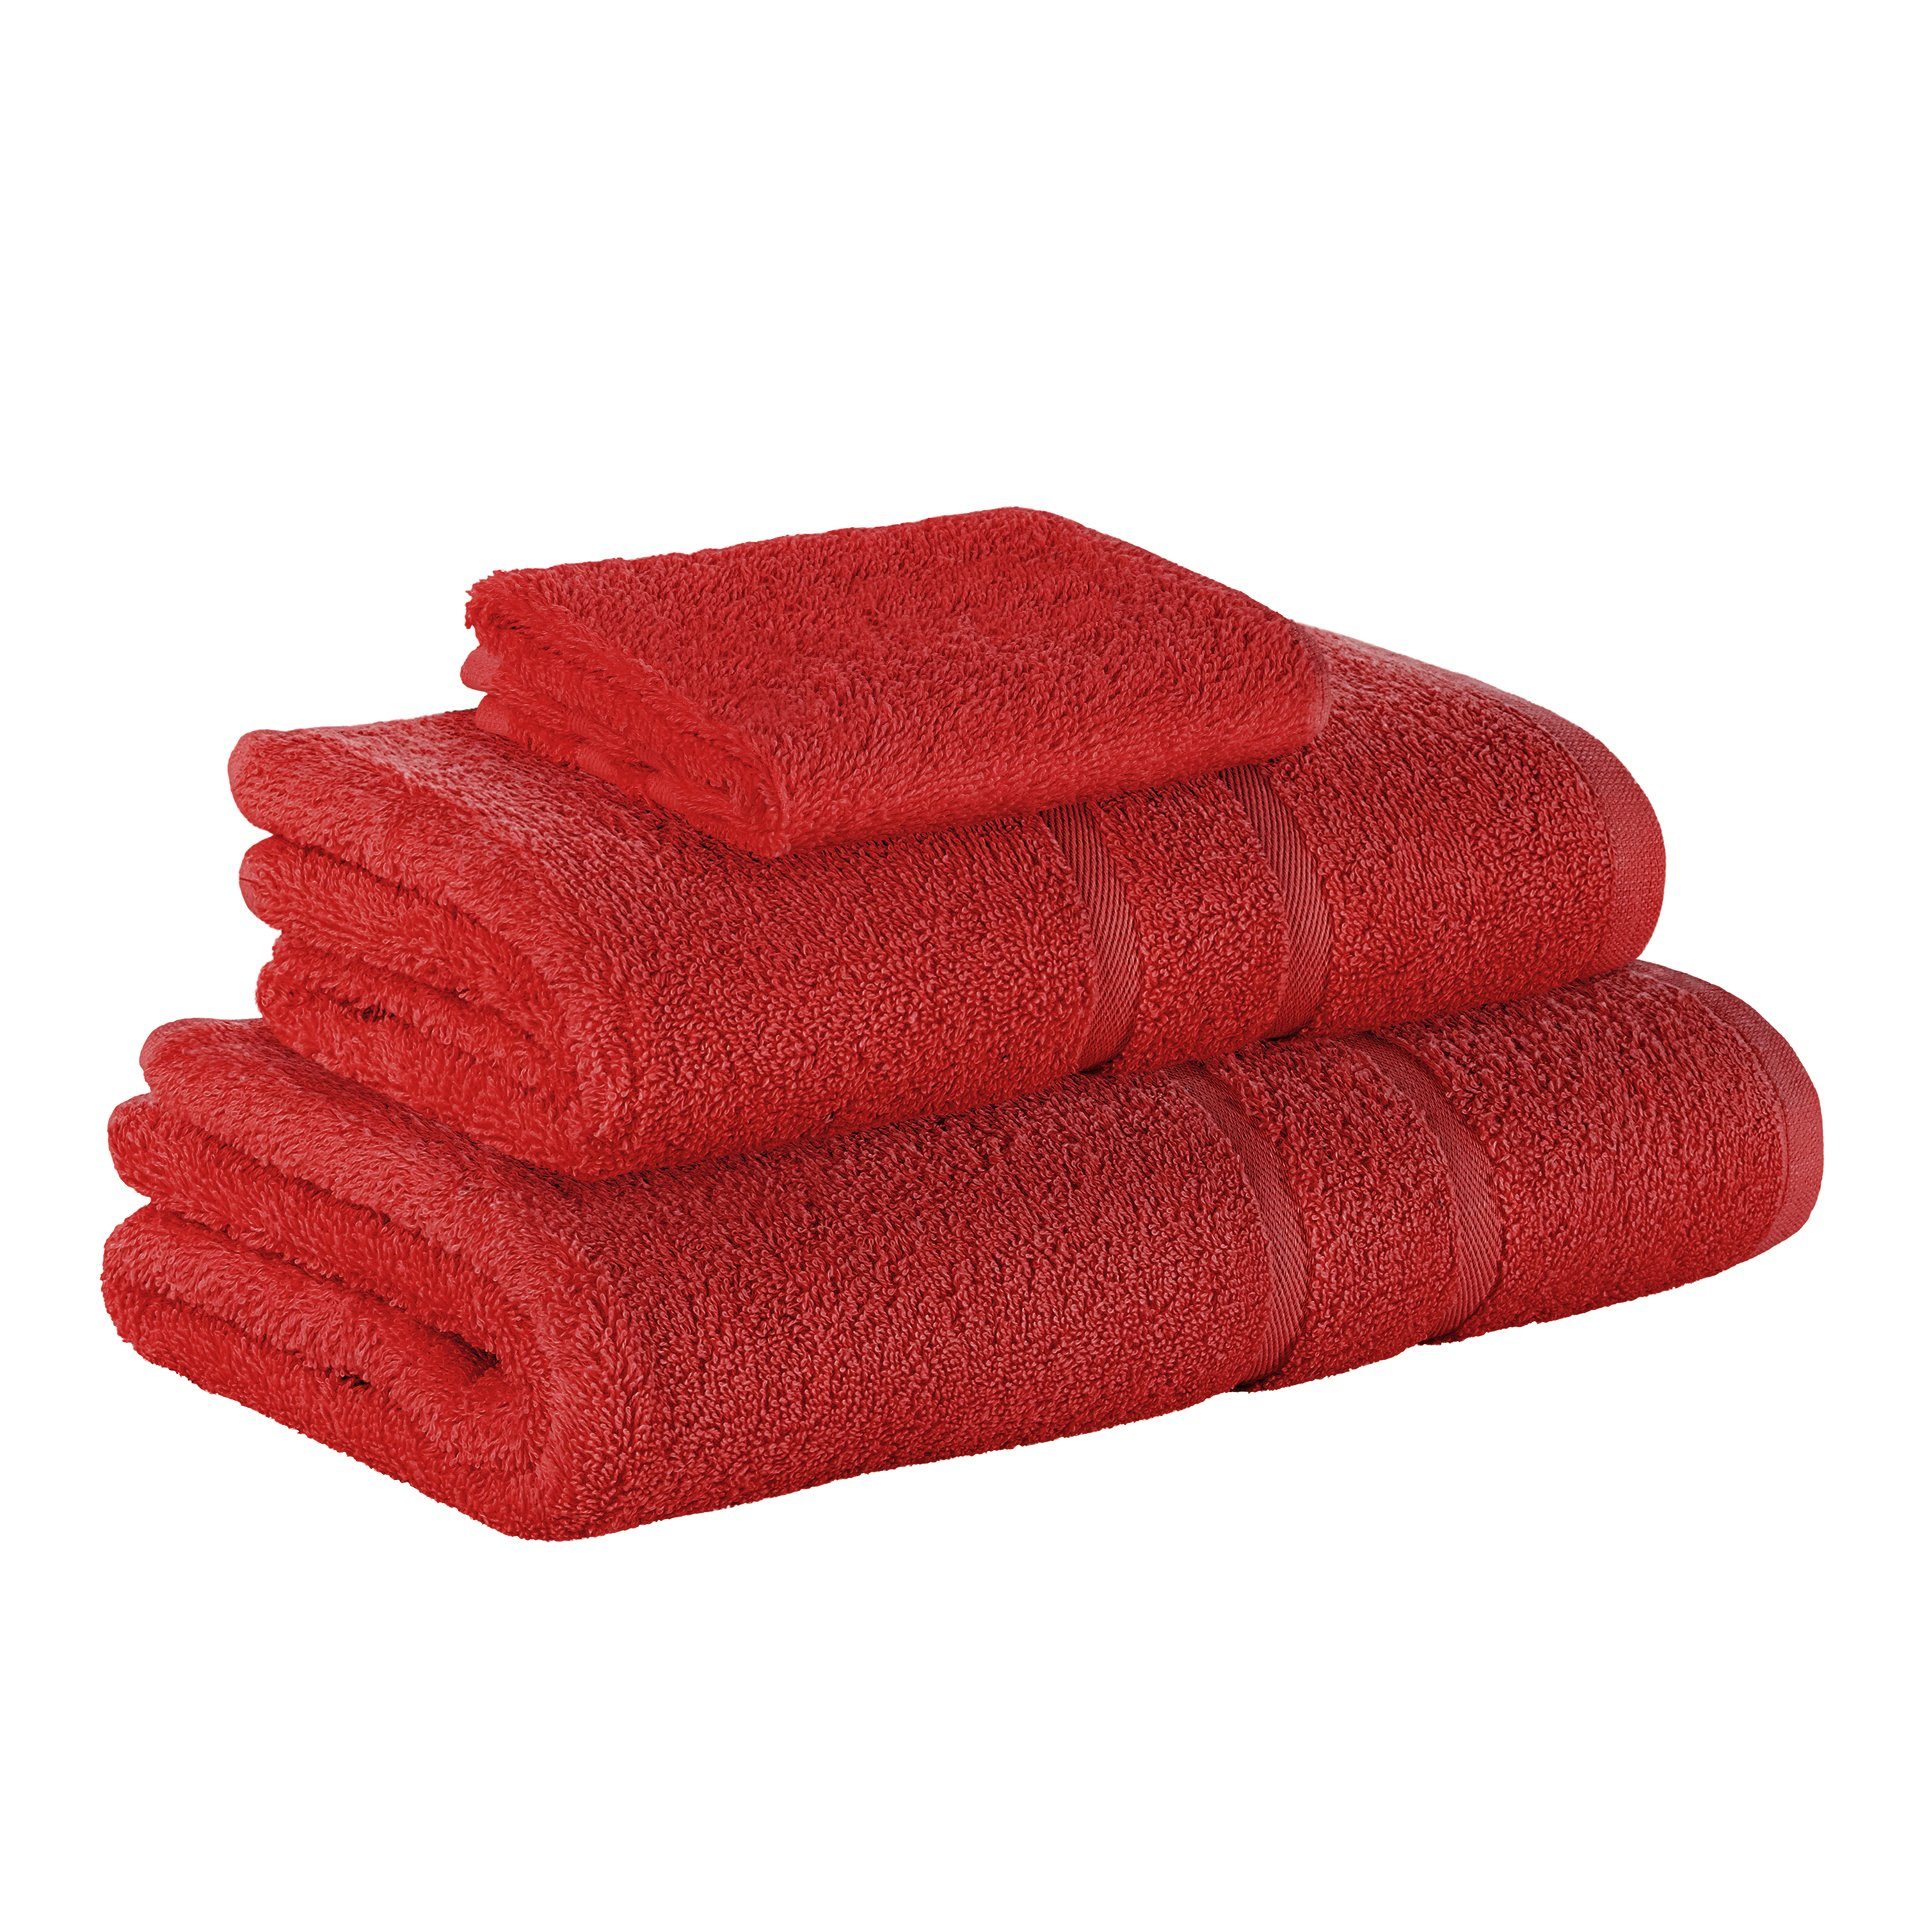 StickandShine Handtuch Set 1x Gästehandtuch 1x Handtuch 1x Duschtuch als SET in verschiedenen Farben (3 Teilig) 100% Baumwolle 500 GSM Frottee 3er Handtuch Pack, 100% Baumwolle 500GSM